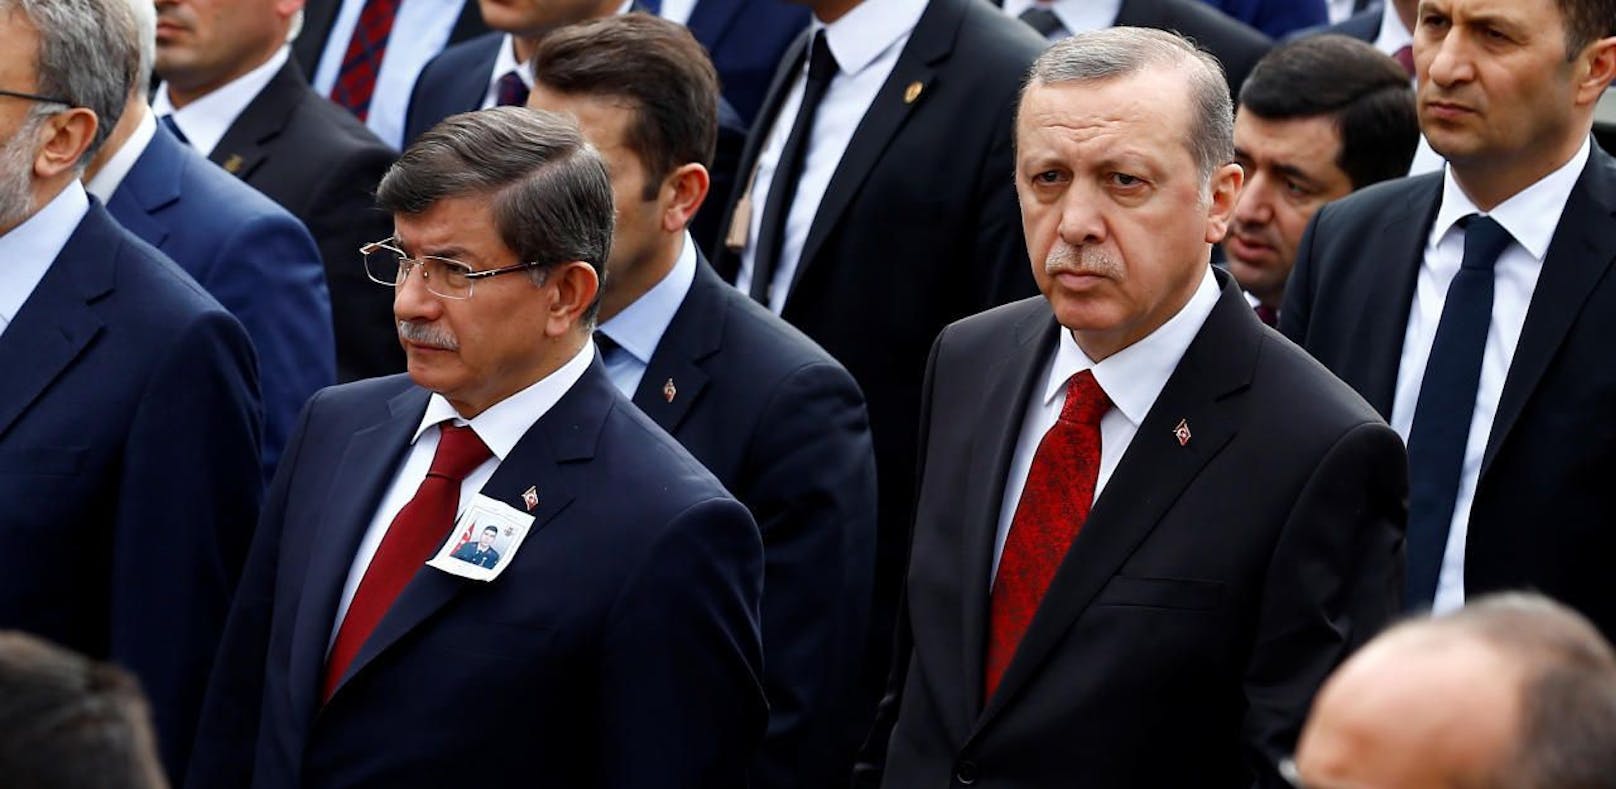 Türkei: Einstiger Erdogan-Vertrauter spaltet AKP